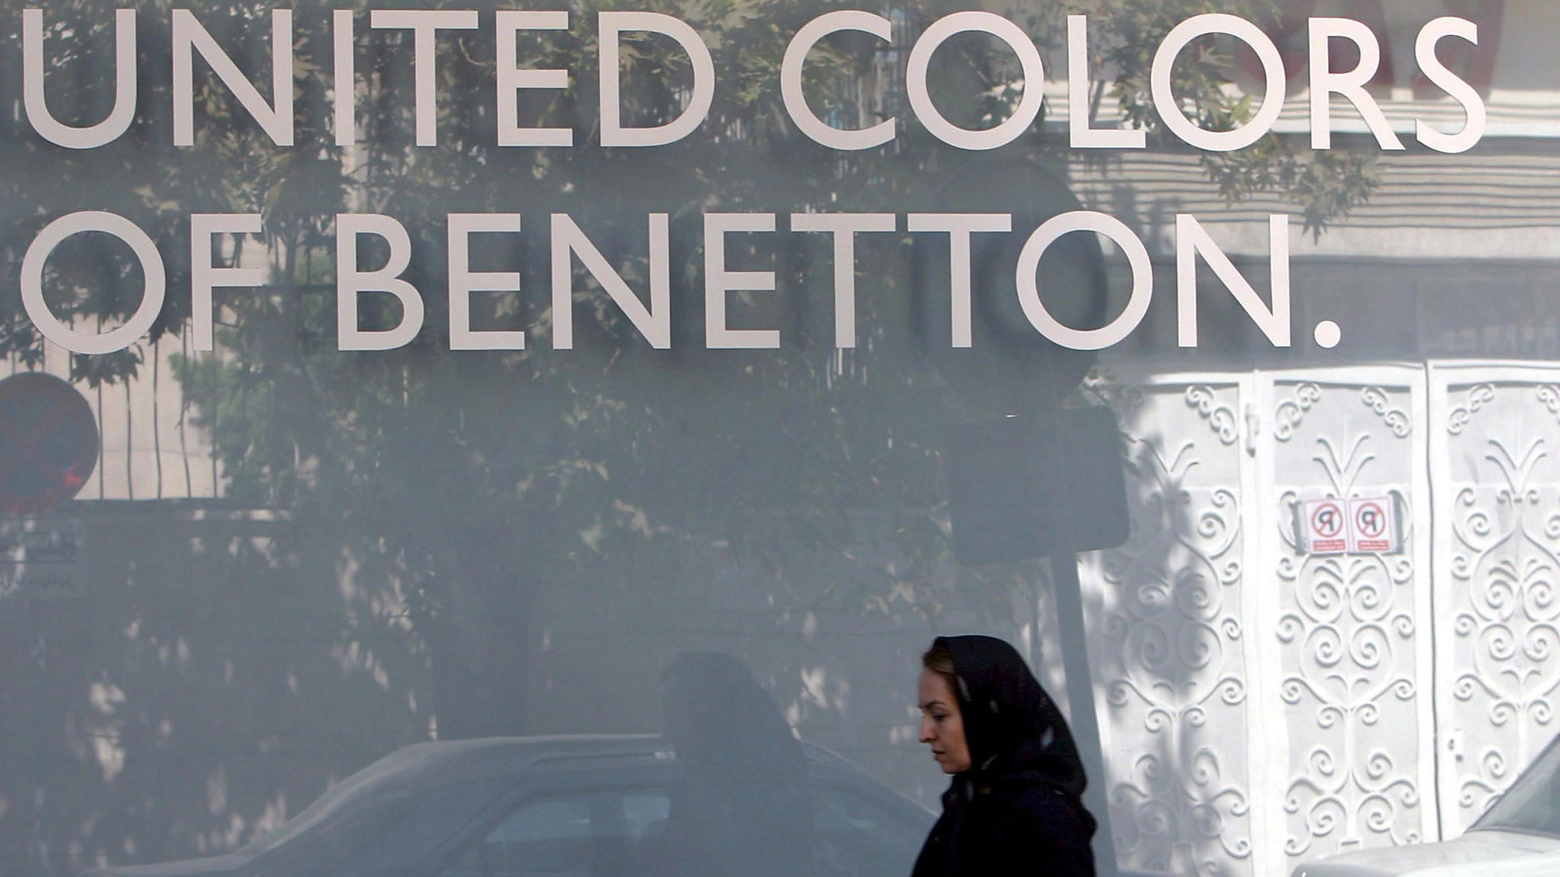 Benetton propone la solidarietà fino al 40%, no dei sindacati